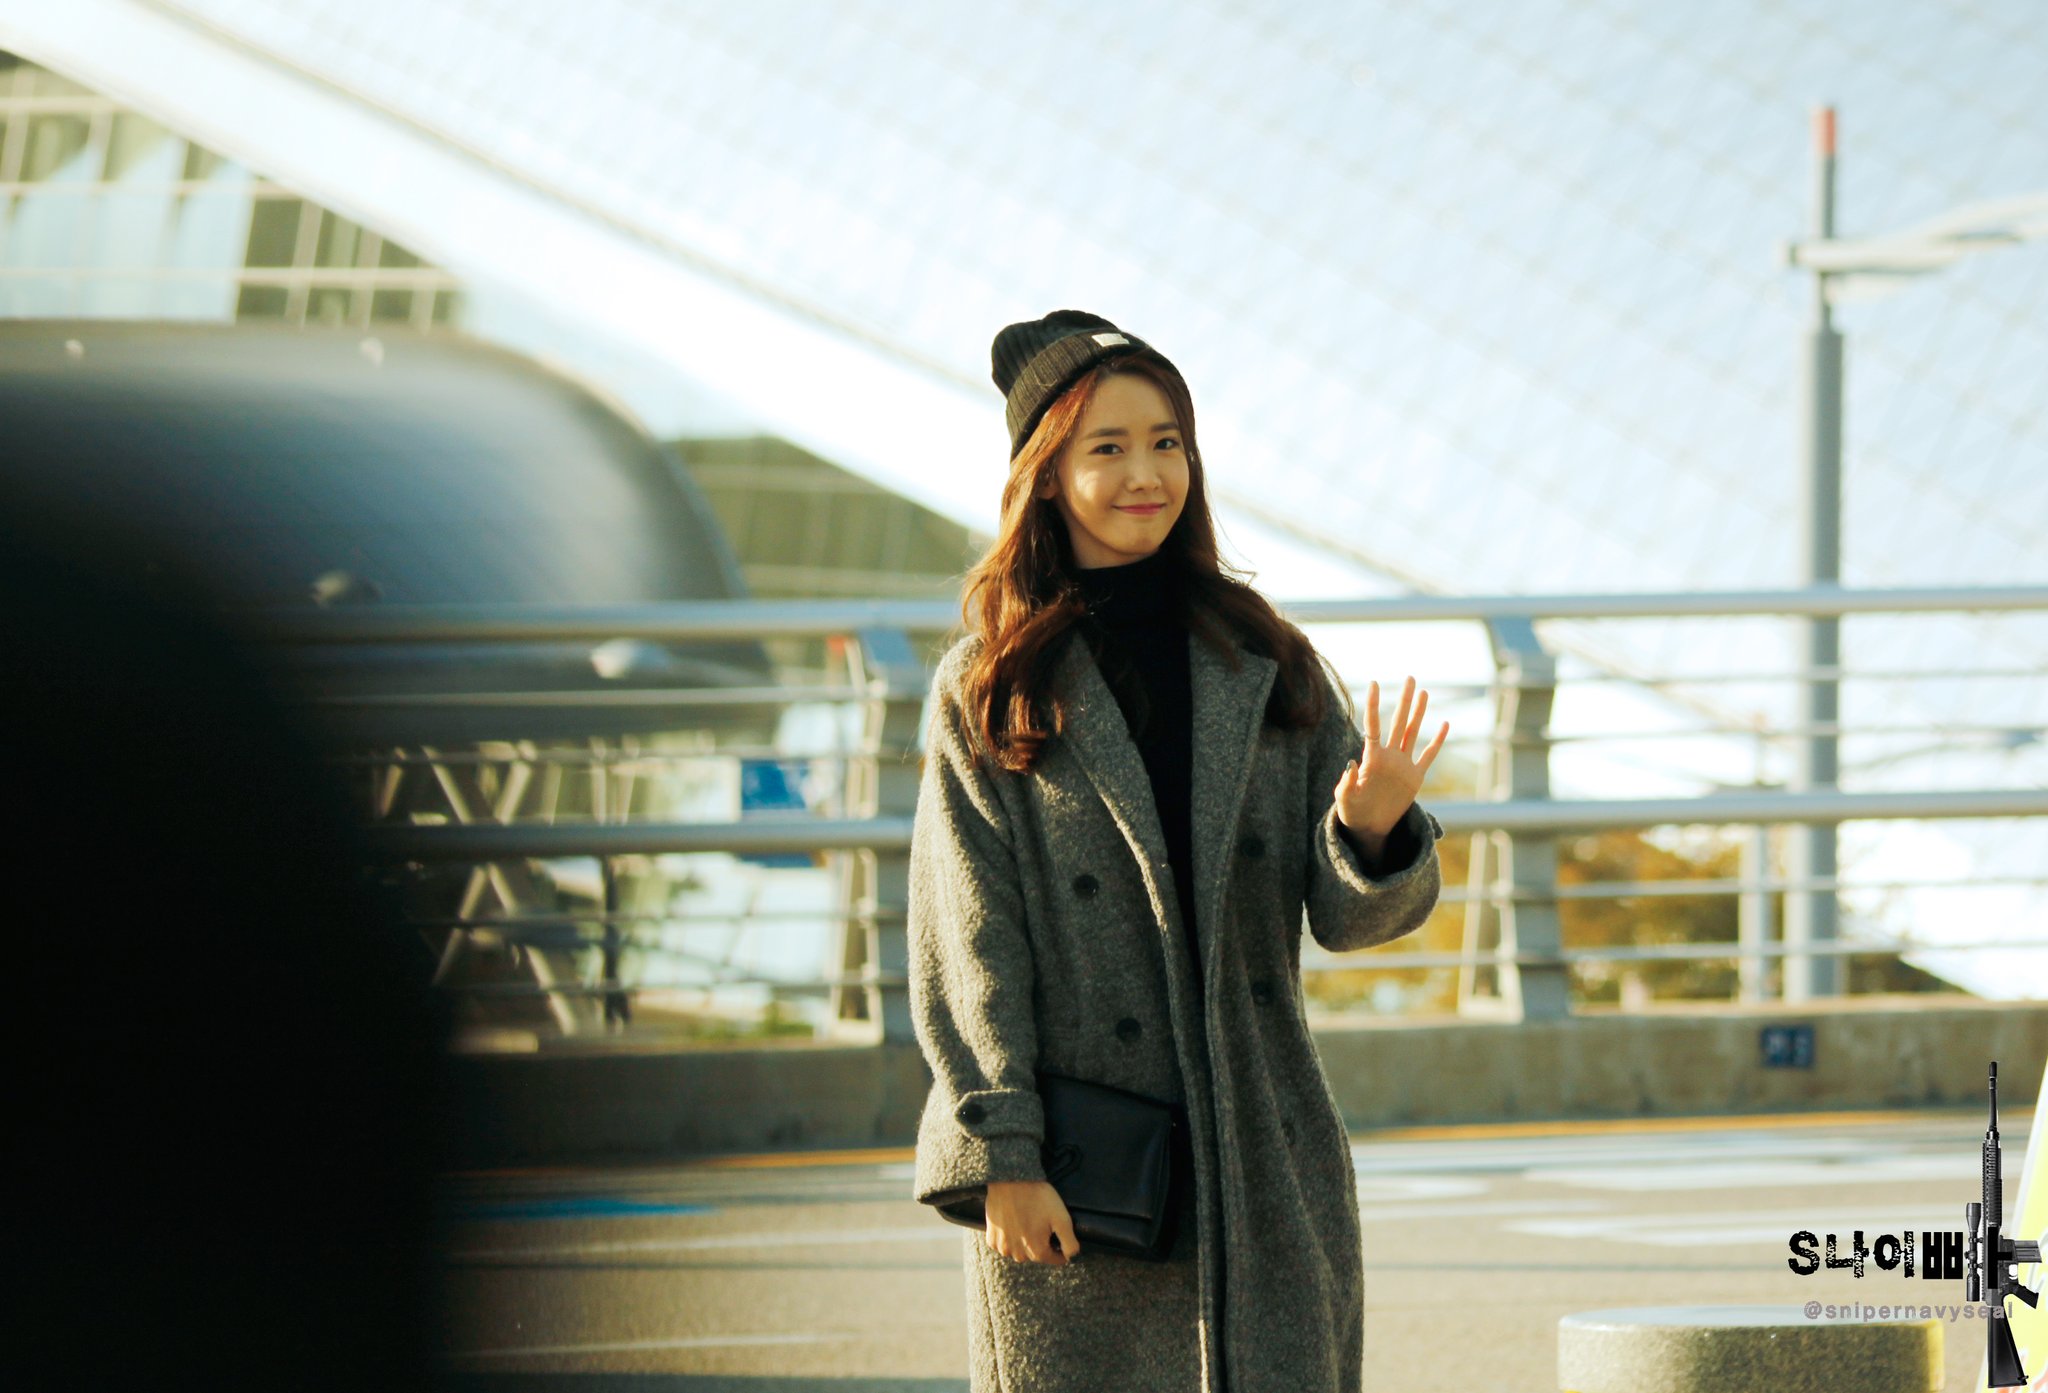 [PIC][31-10-2015]YoonA khởi hành đi Đài Loan để tham dự Fansign cho thương hiệu "H:CONNECT" vào sáng nay - Page 6 CYBbpFrU0AEg9g_